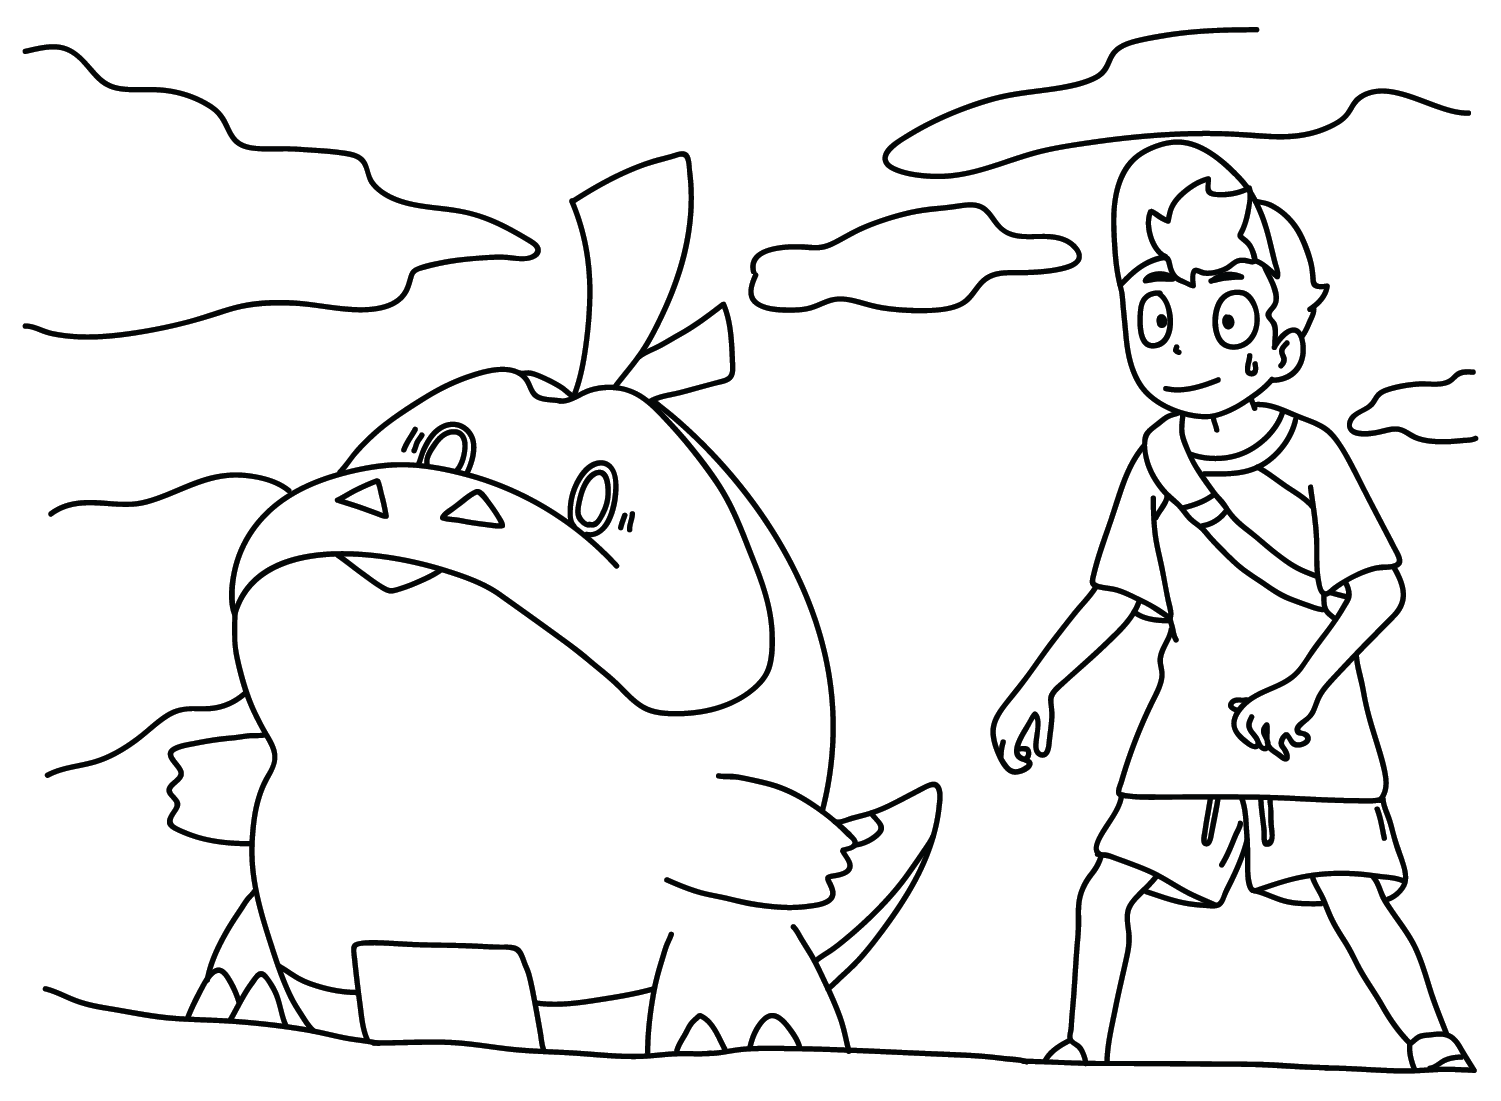 Desenhos para colorir Pokemon - Fuecoco - Desenhos Pokemon